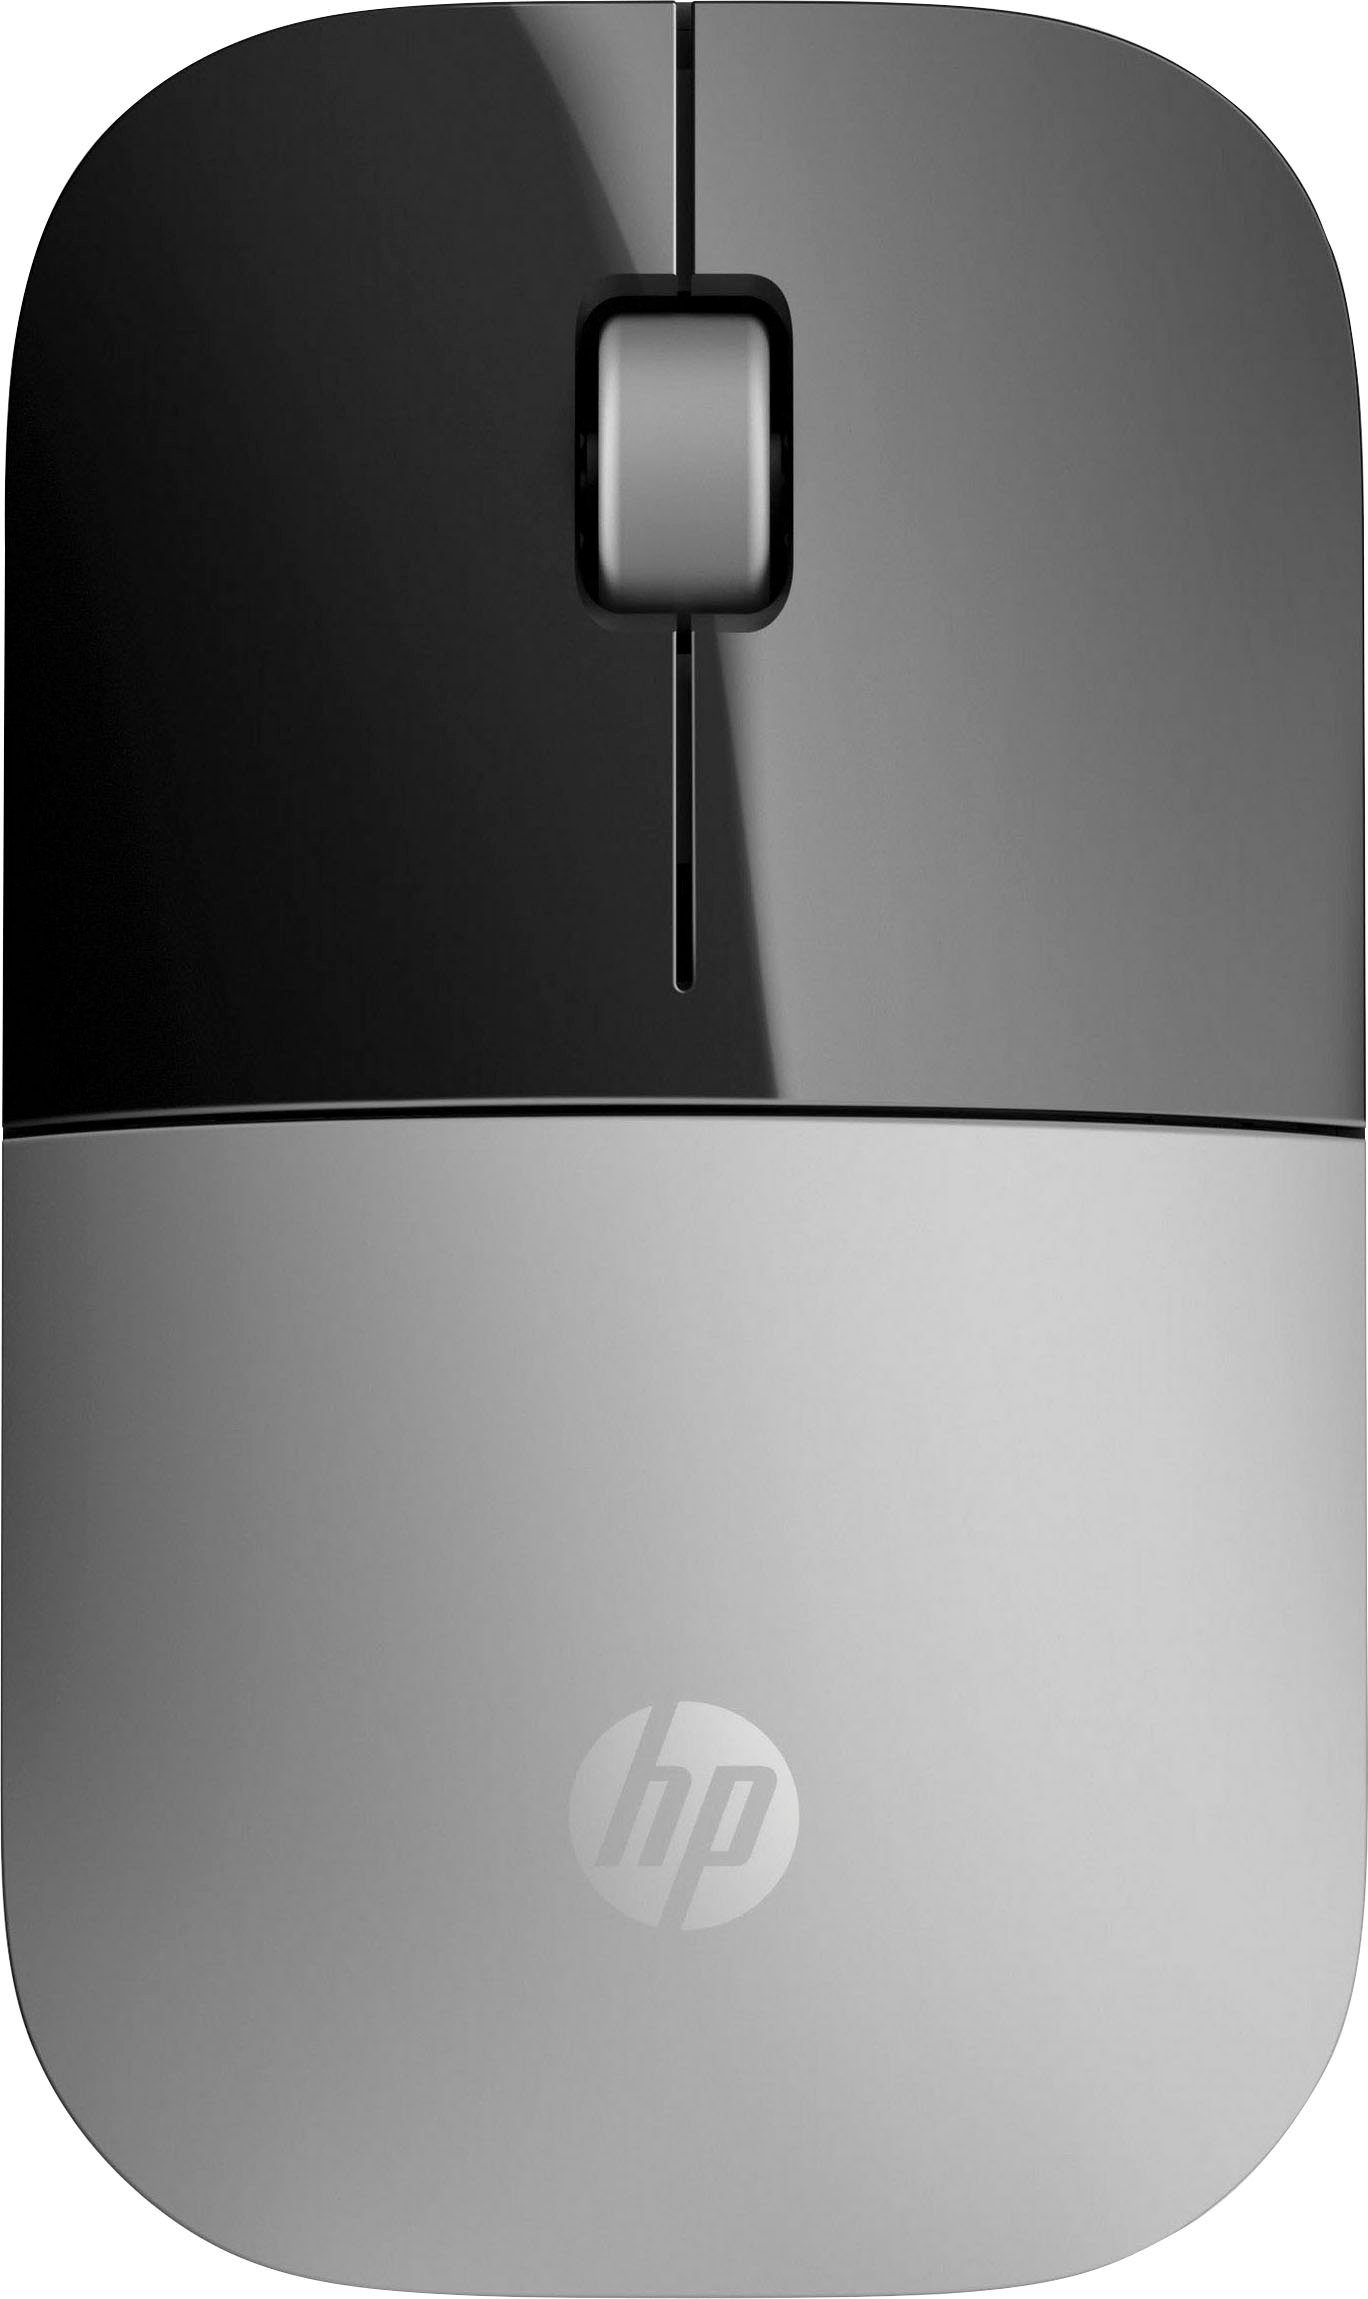 Preis für den Durchschnittsbürger HP Z3700 Maus schwarz/silberfarben